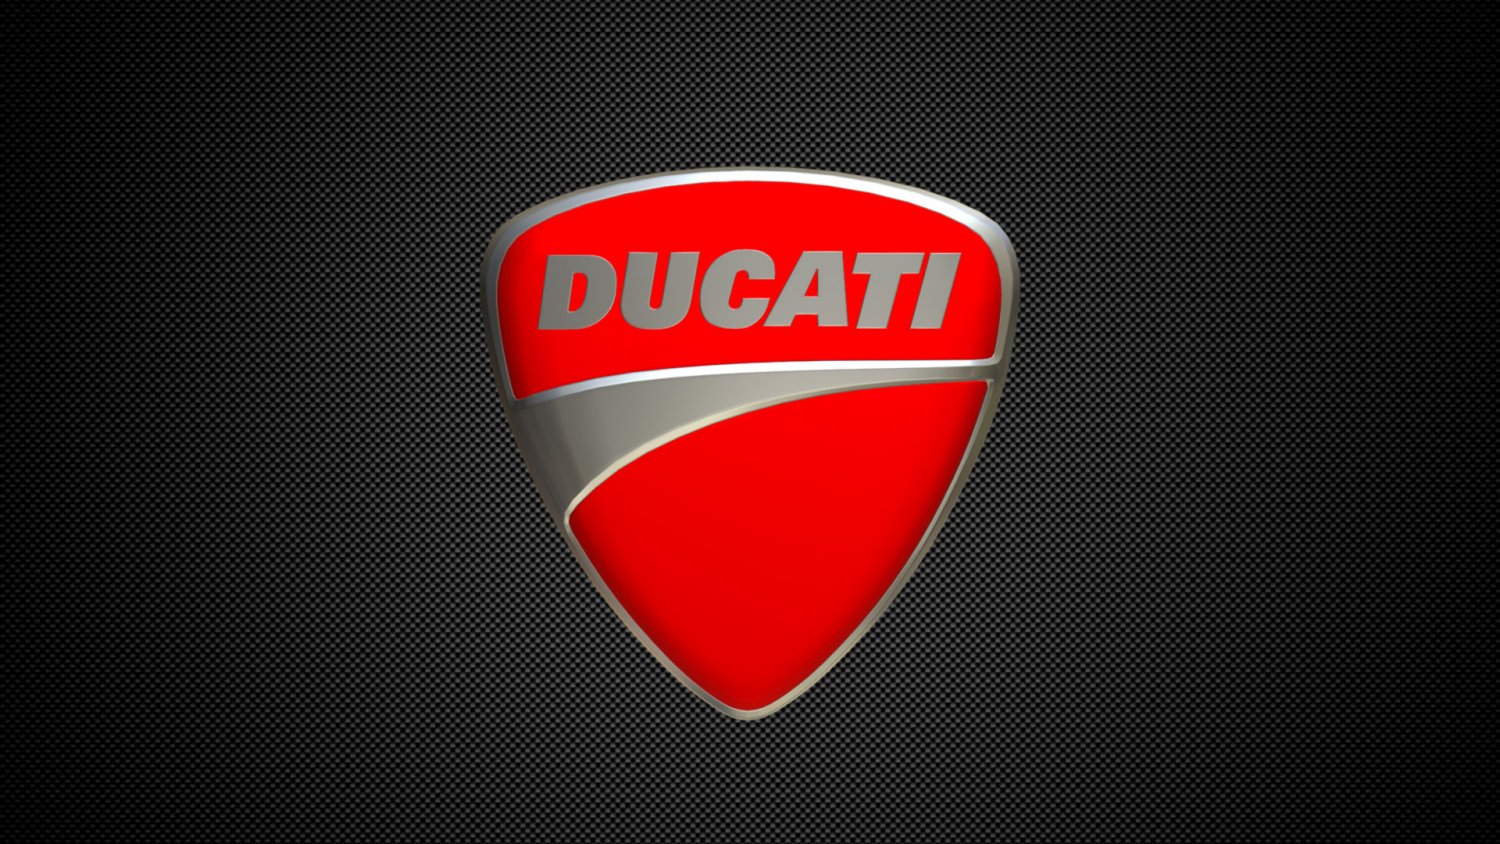 Ducati Logo Black And White Ducati Corse Hd Wallpaper Backgrounds Download